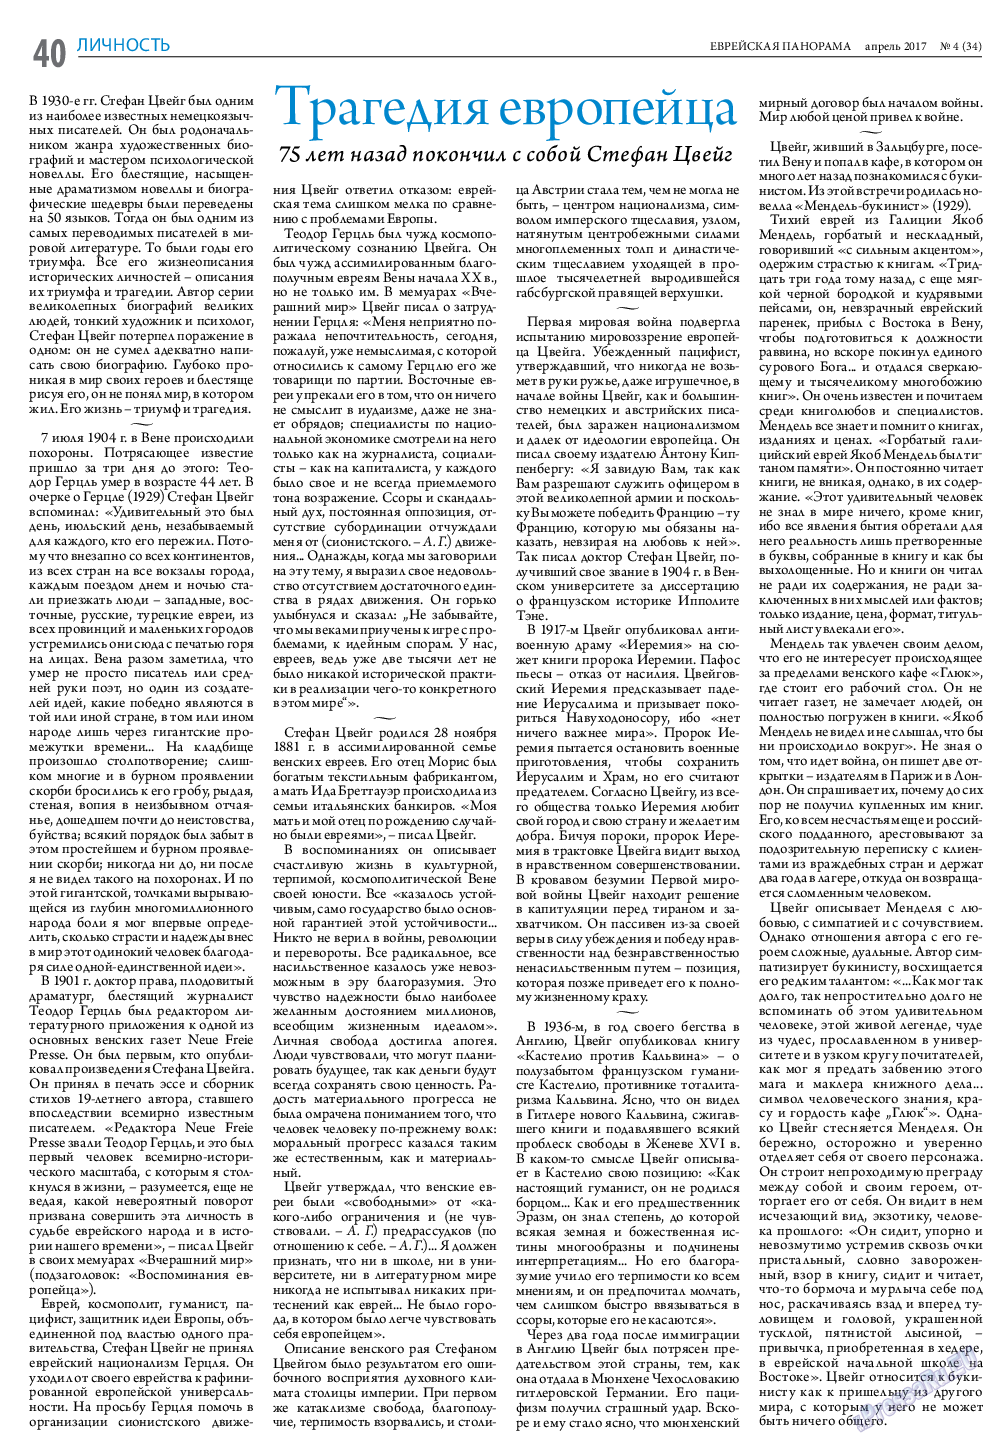 Еврейская панорама (газета). 2017 год, номер 4, стр. 40